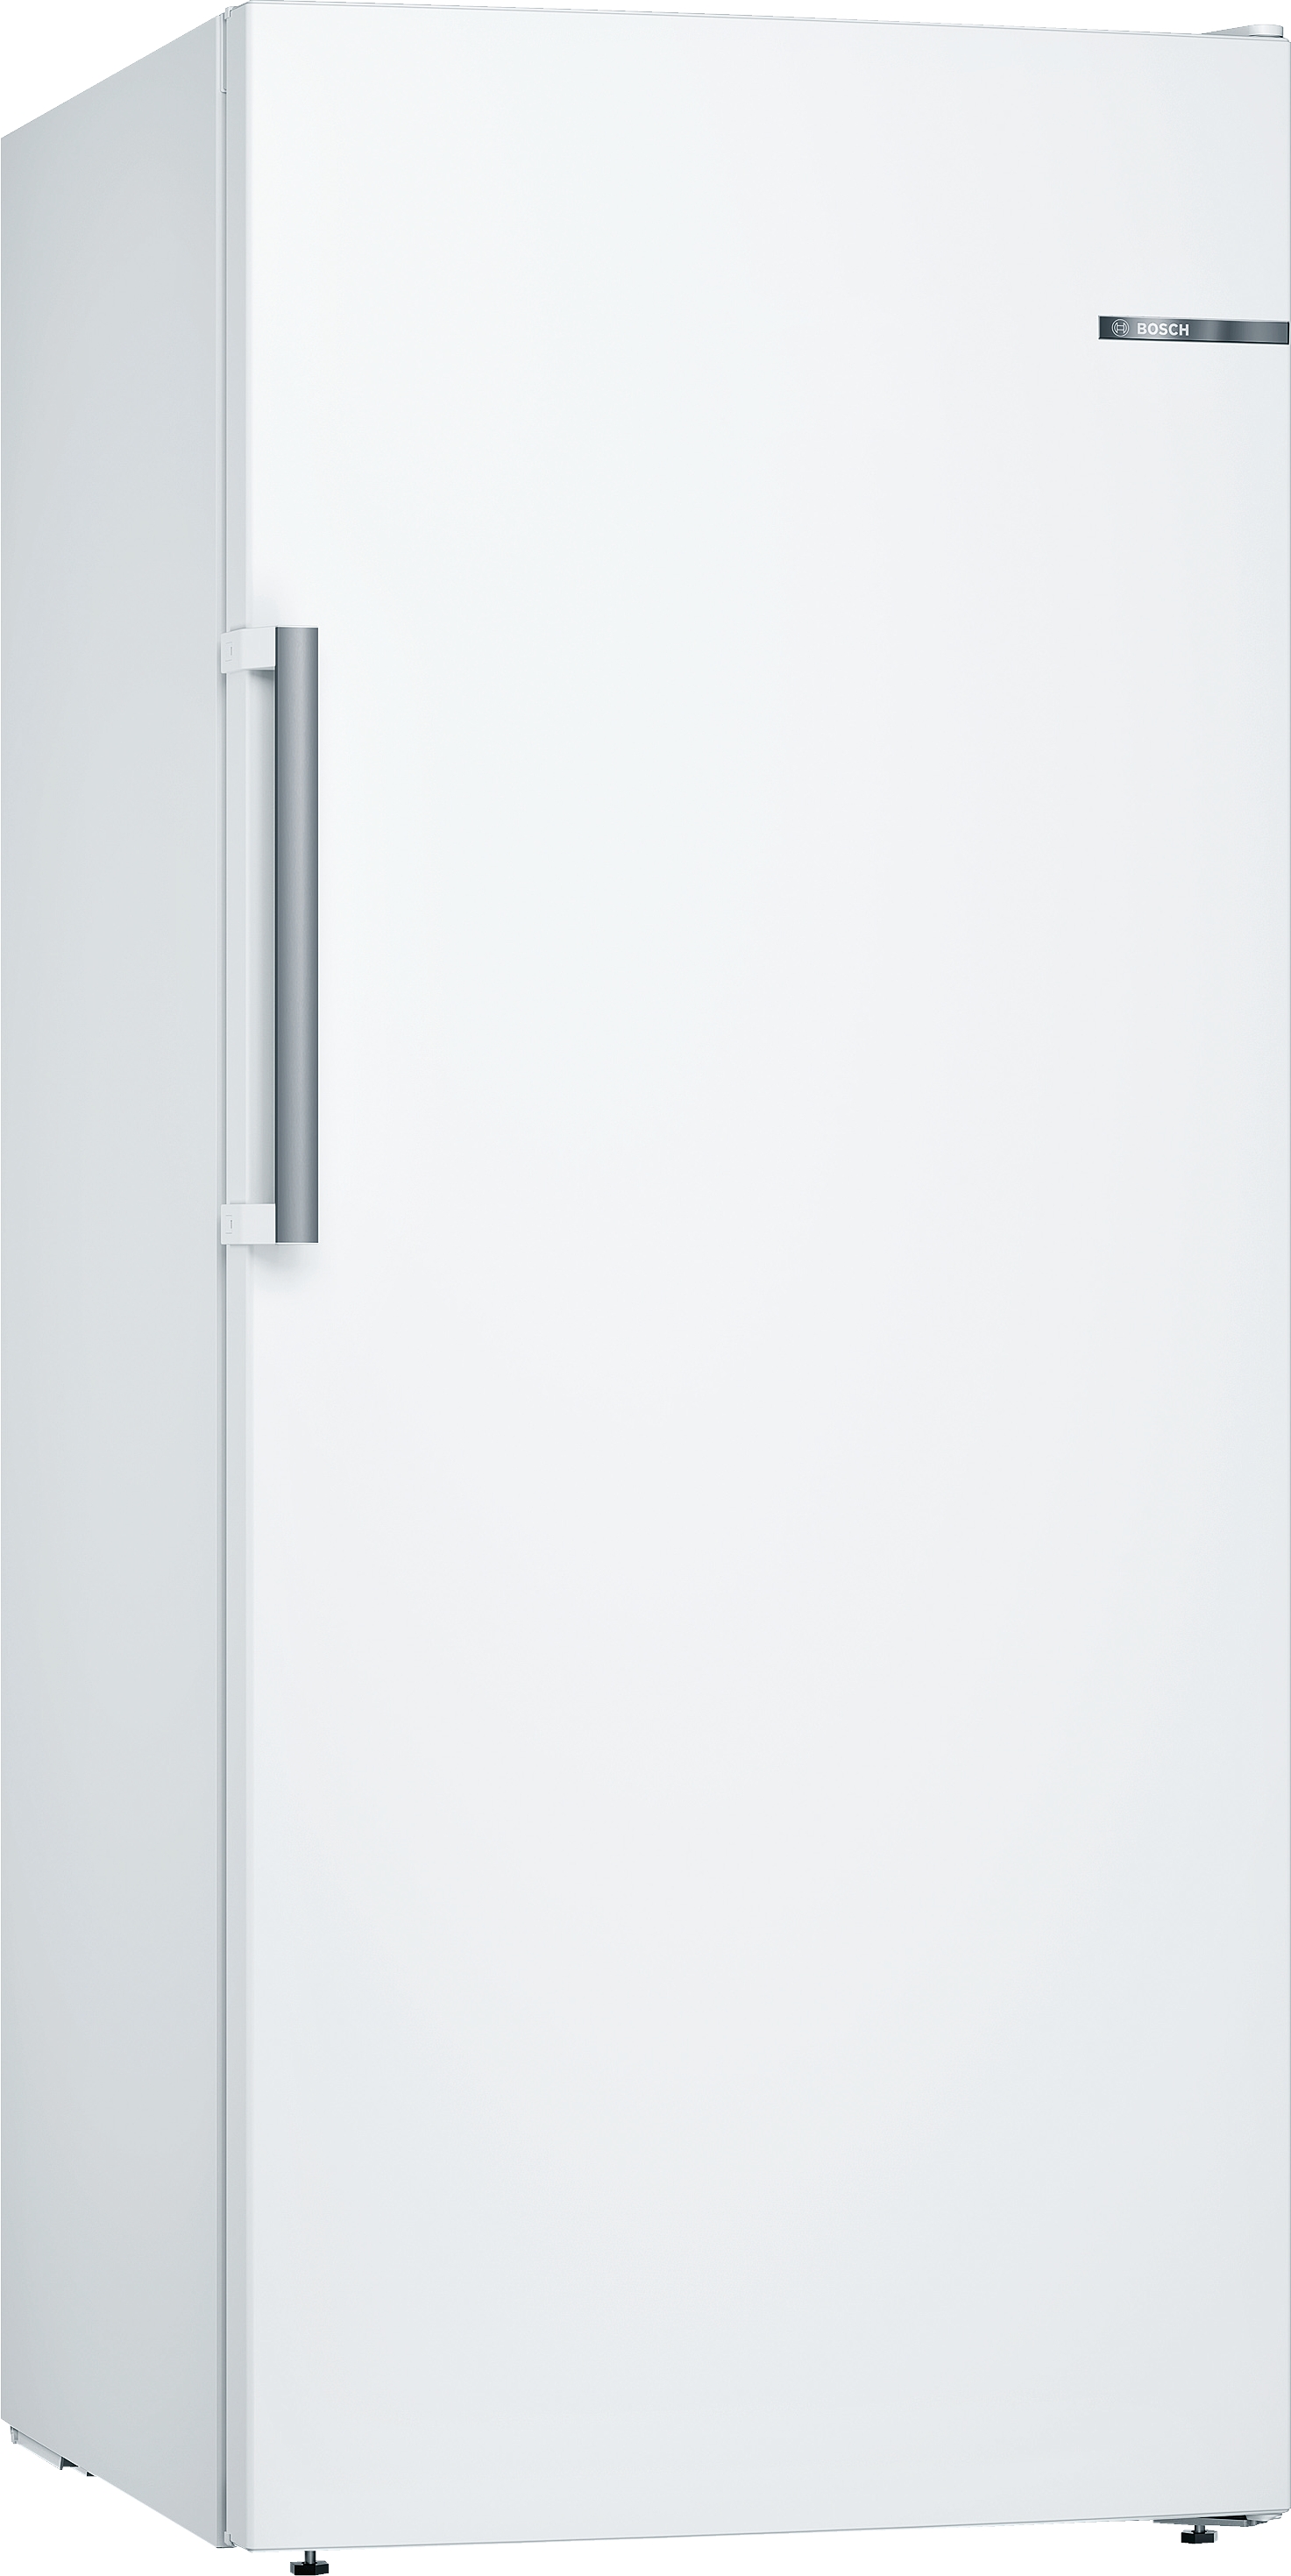 Bosch Serie 6, Freistehender Gefrierschrank, 161 x 70 cm, Weiß, GSN51AWCV